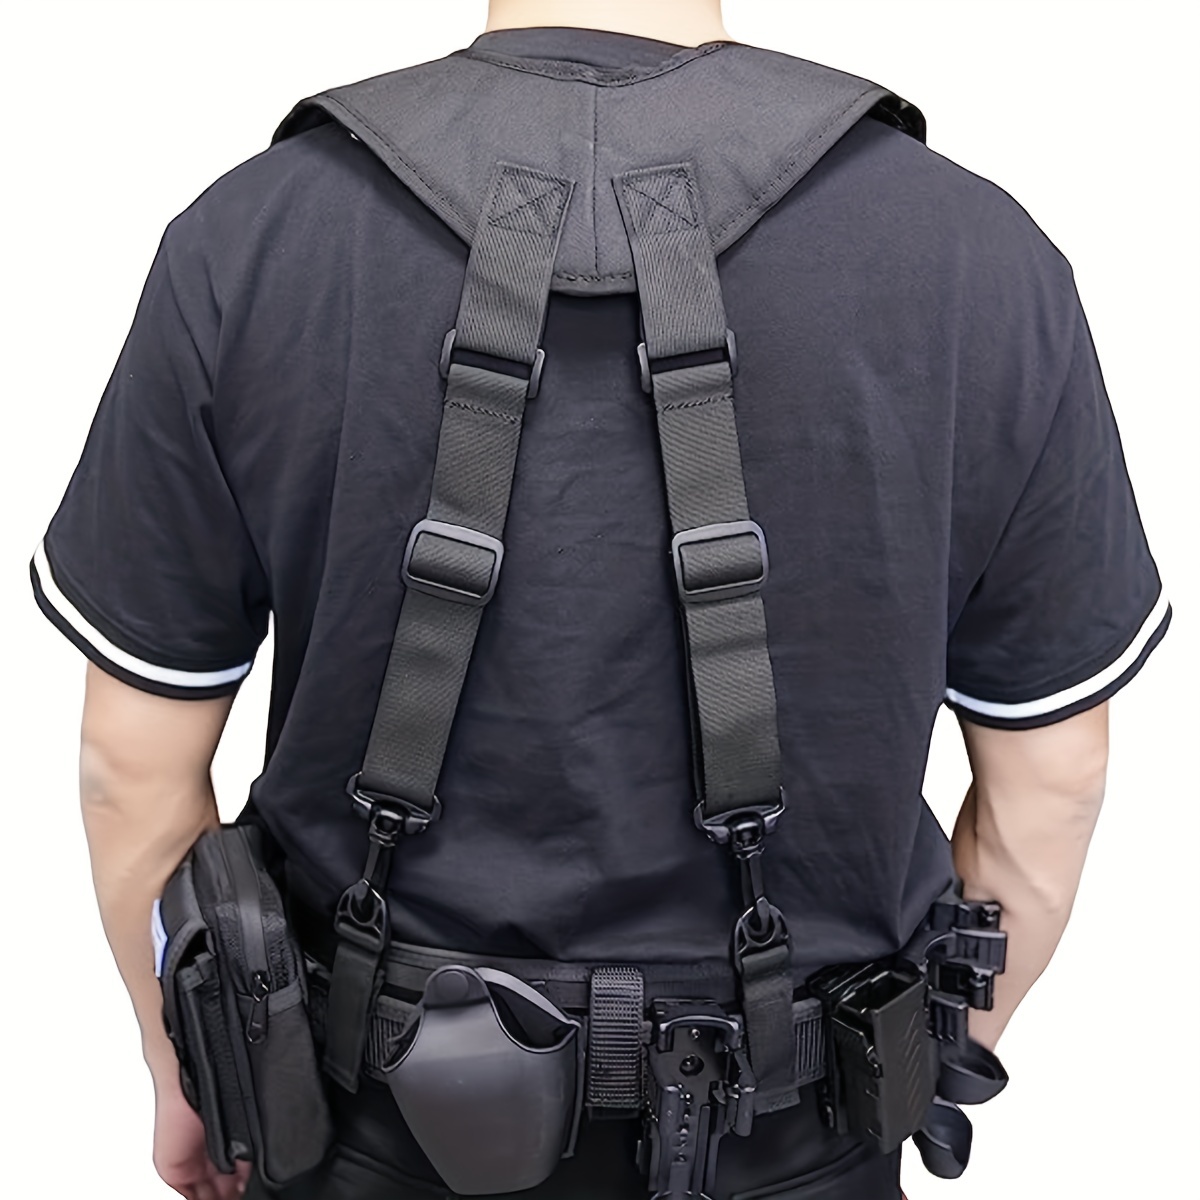  Heavy Duty Tactical Suspenders For Men Outdoor H